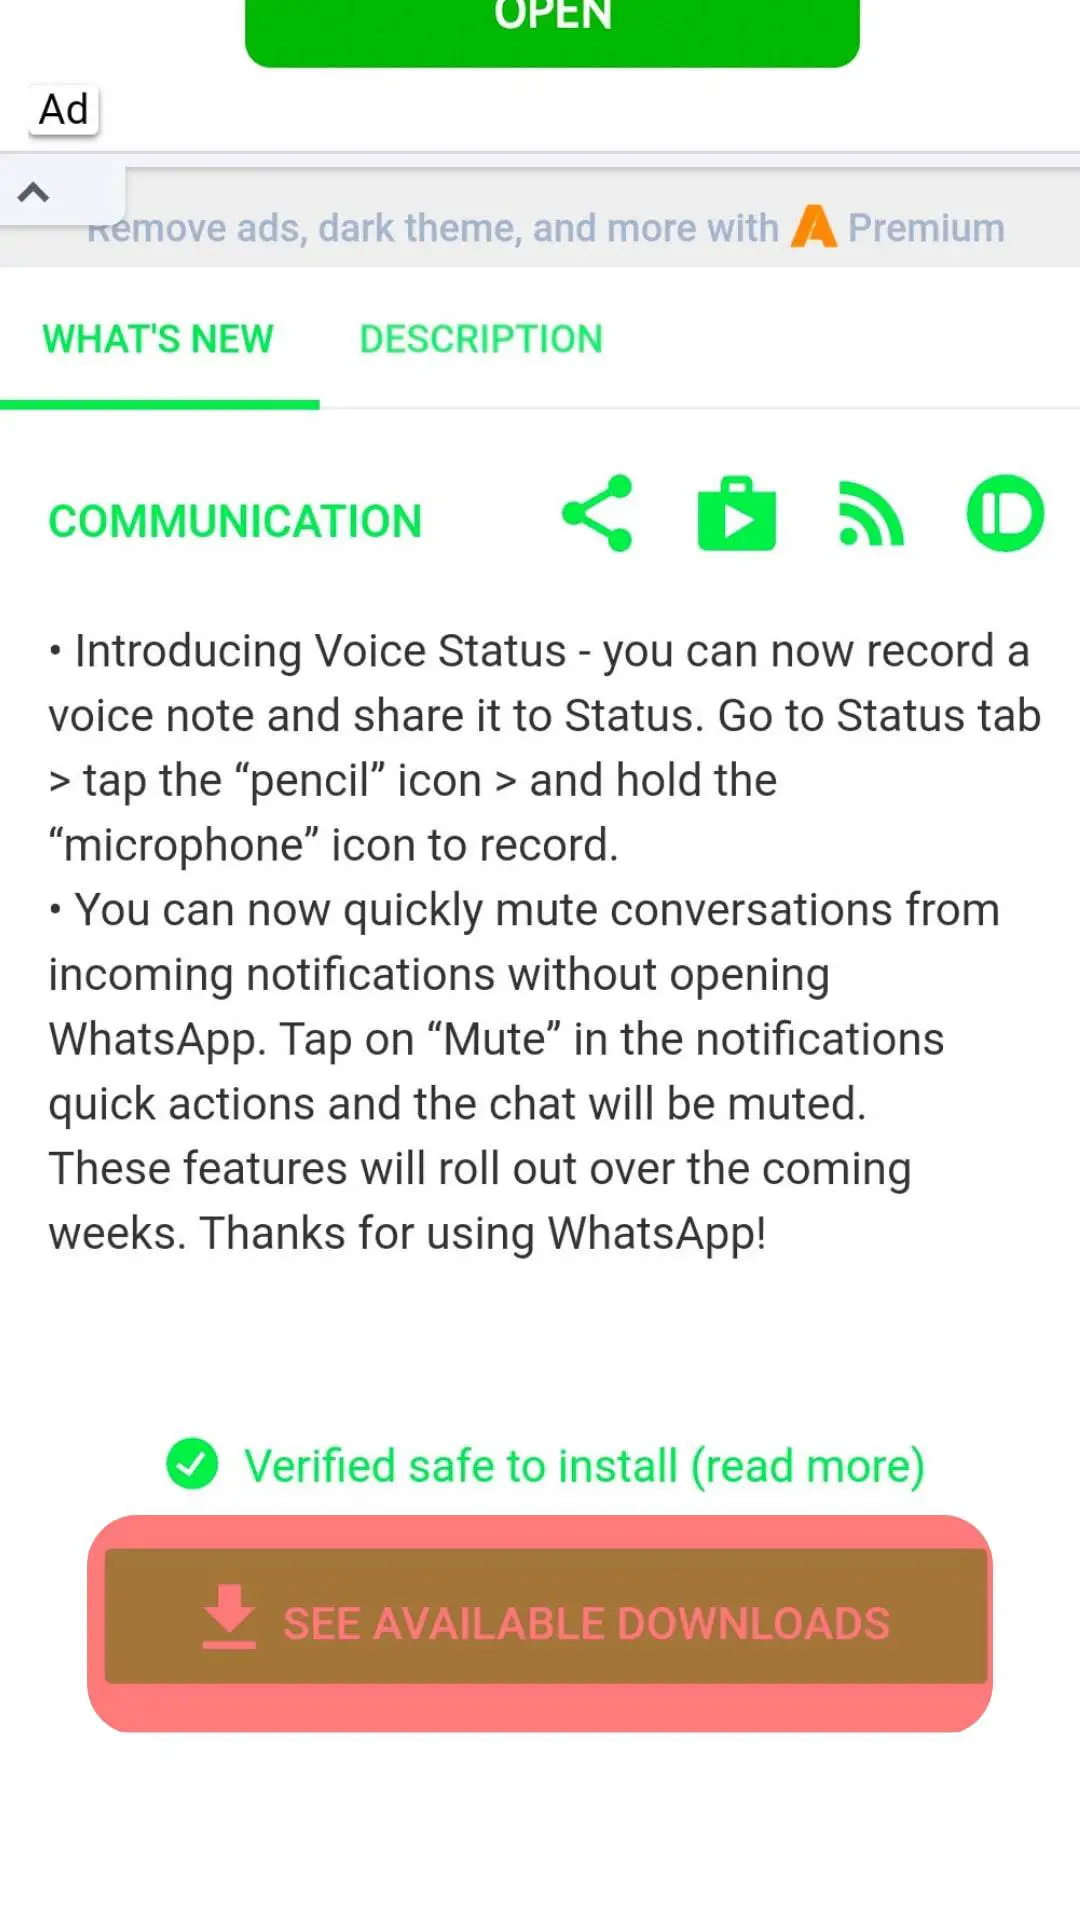 ¿Cómo instalar Whatsapp sin Play Store?